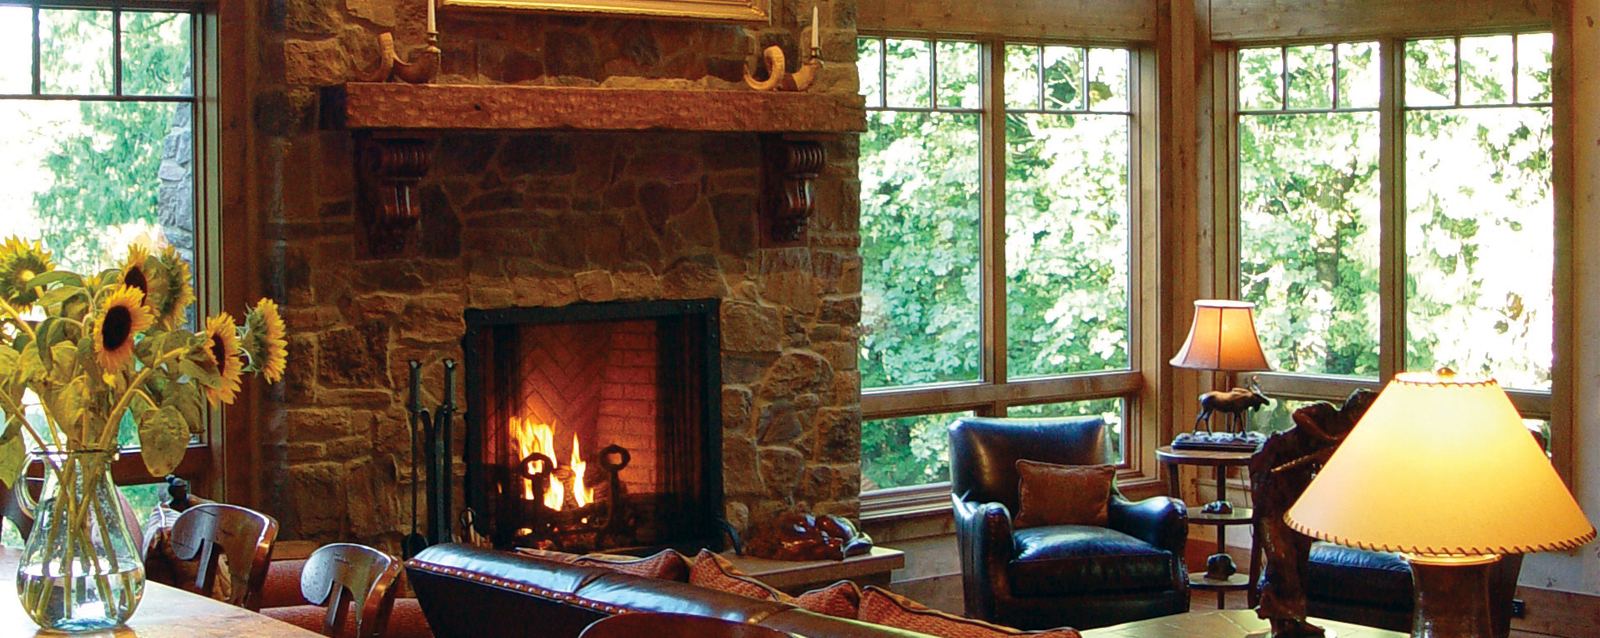 regency outdoor fireplace